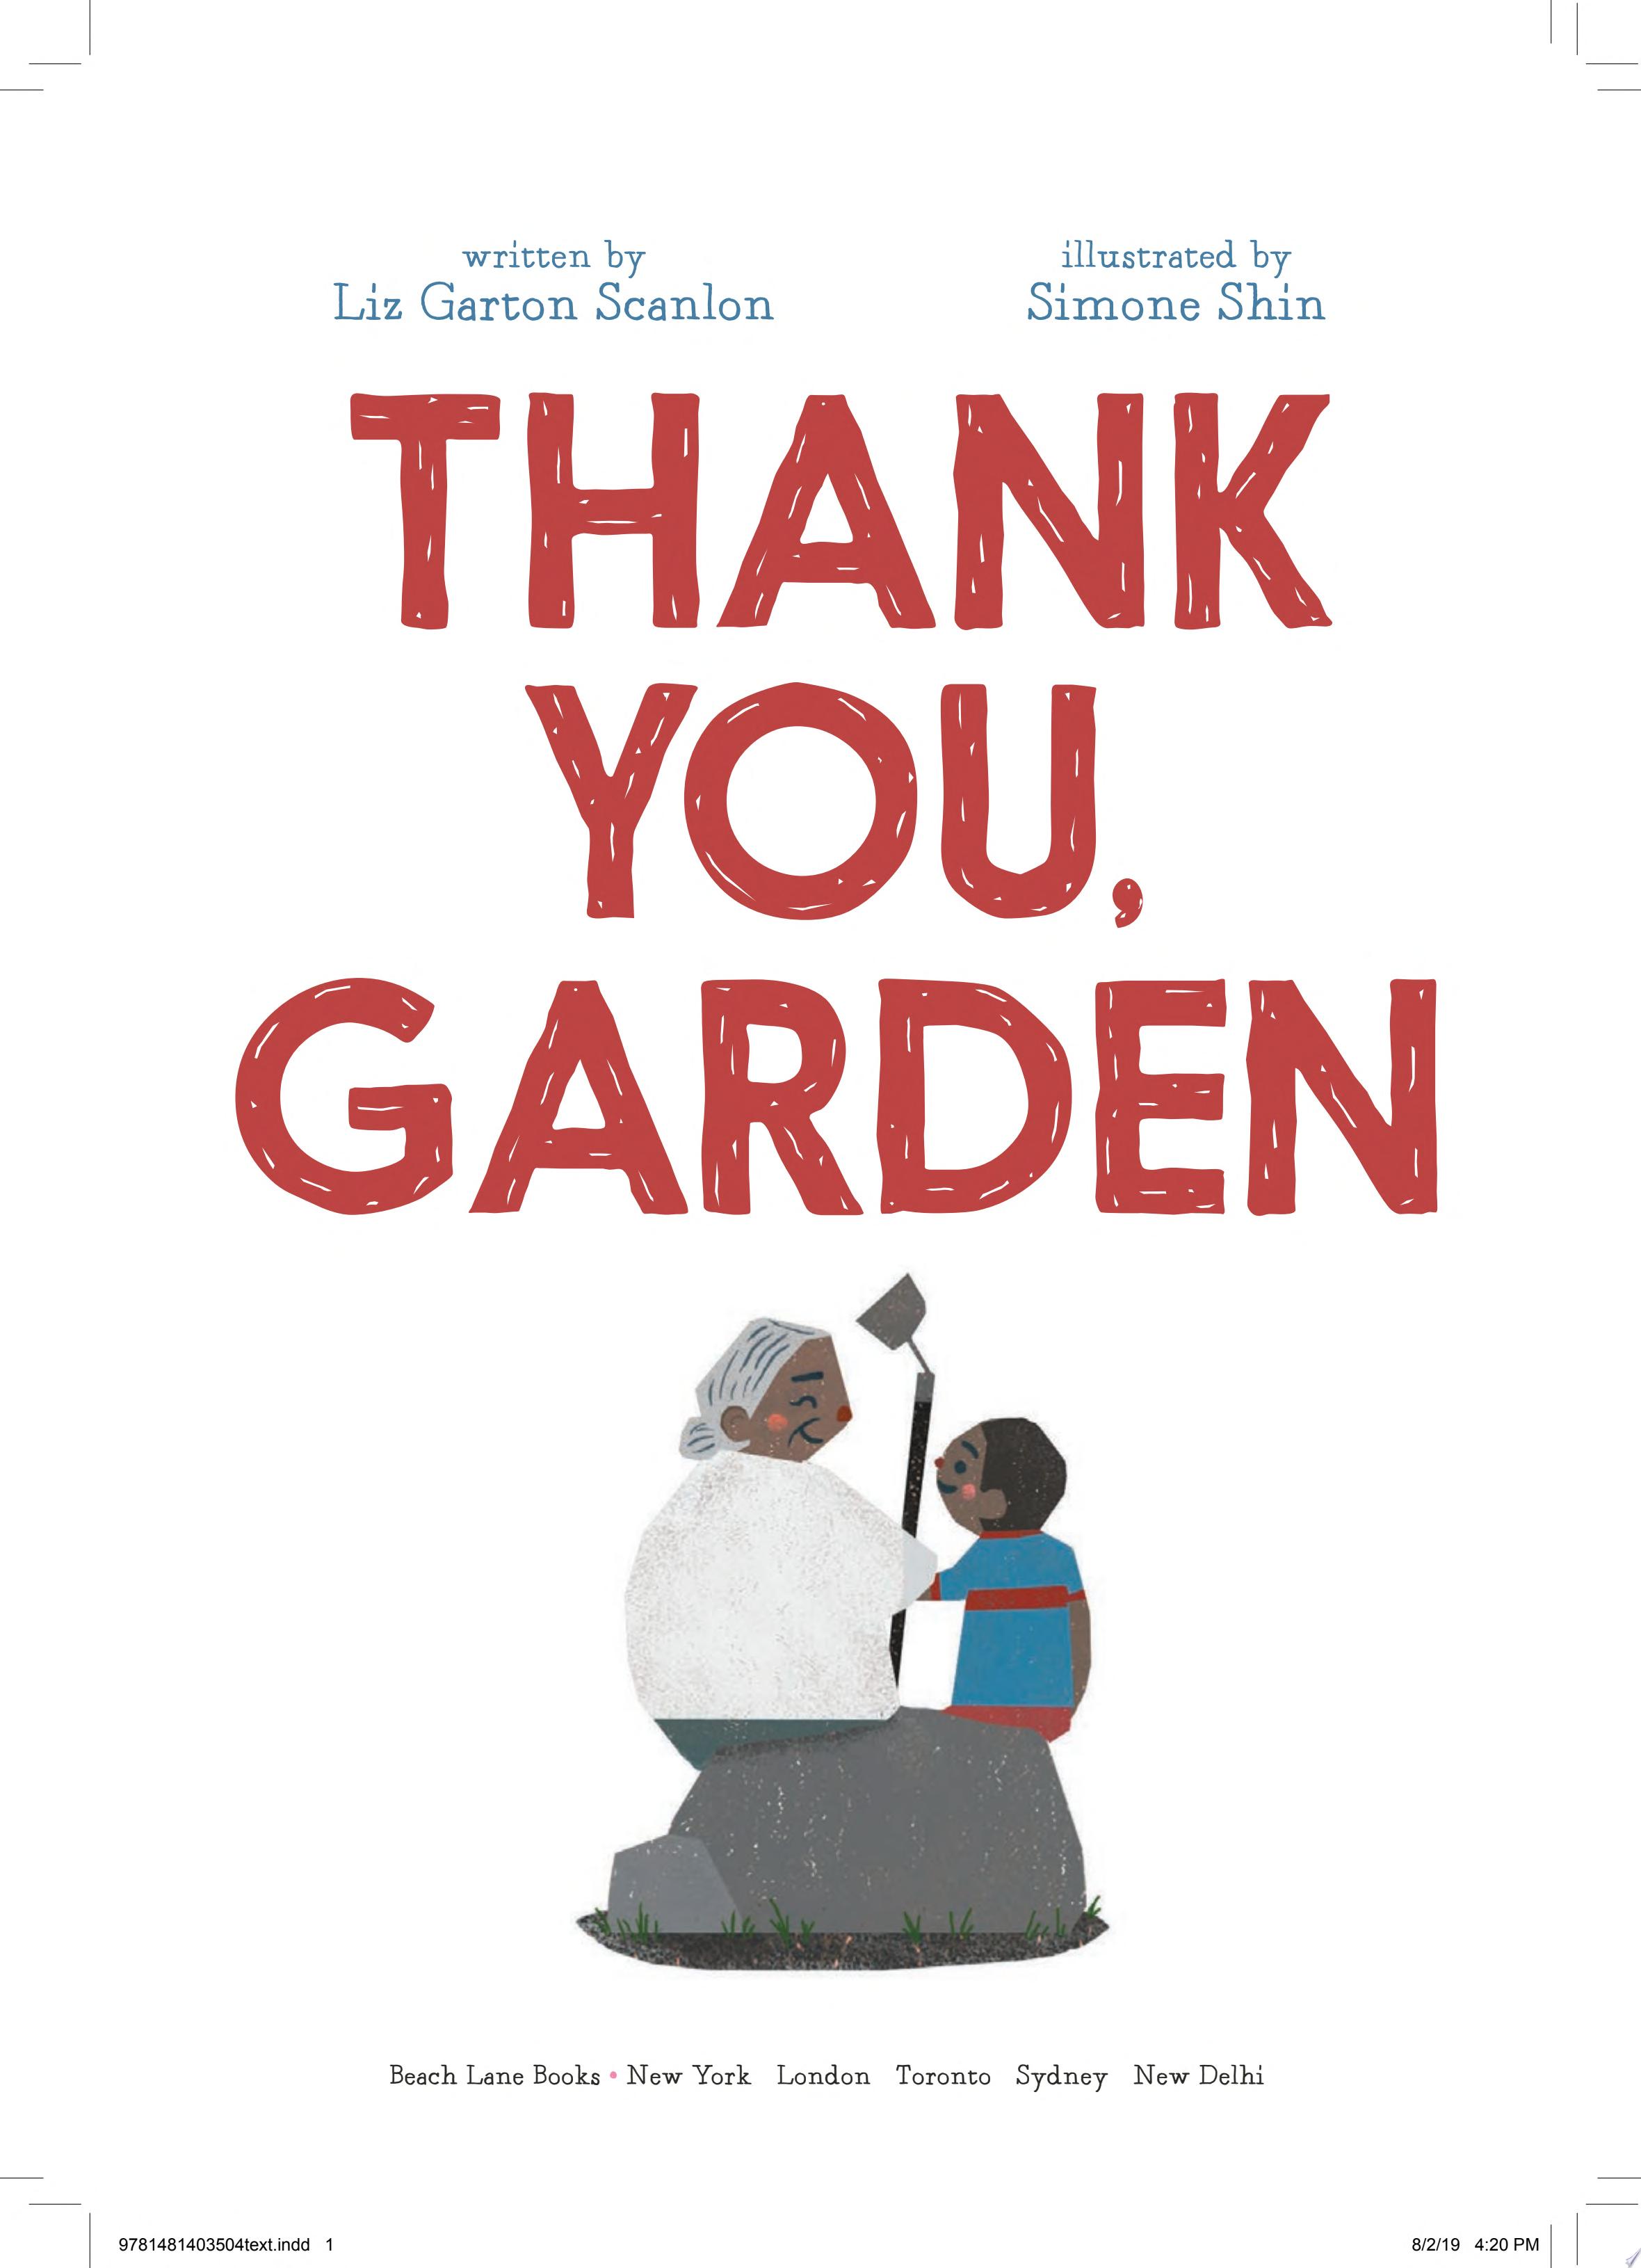 Image for "Thank You, Garden"